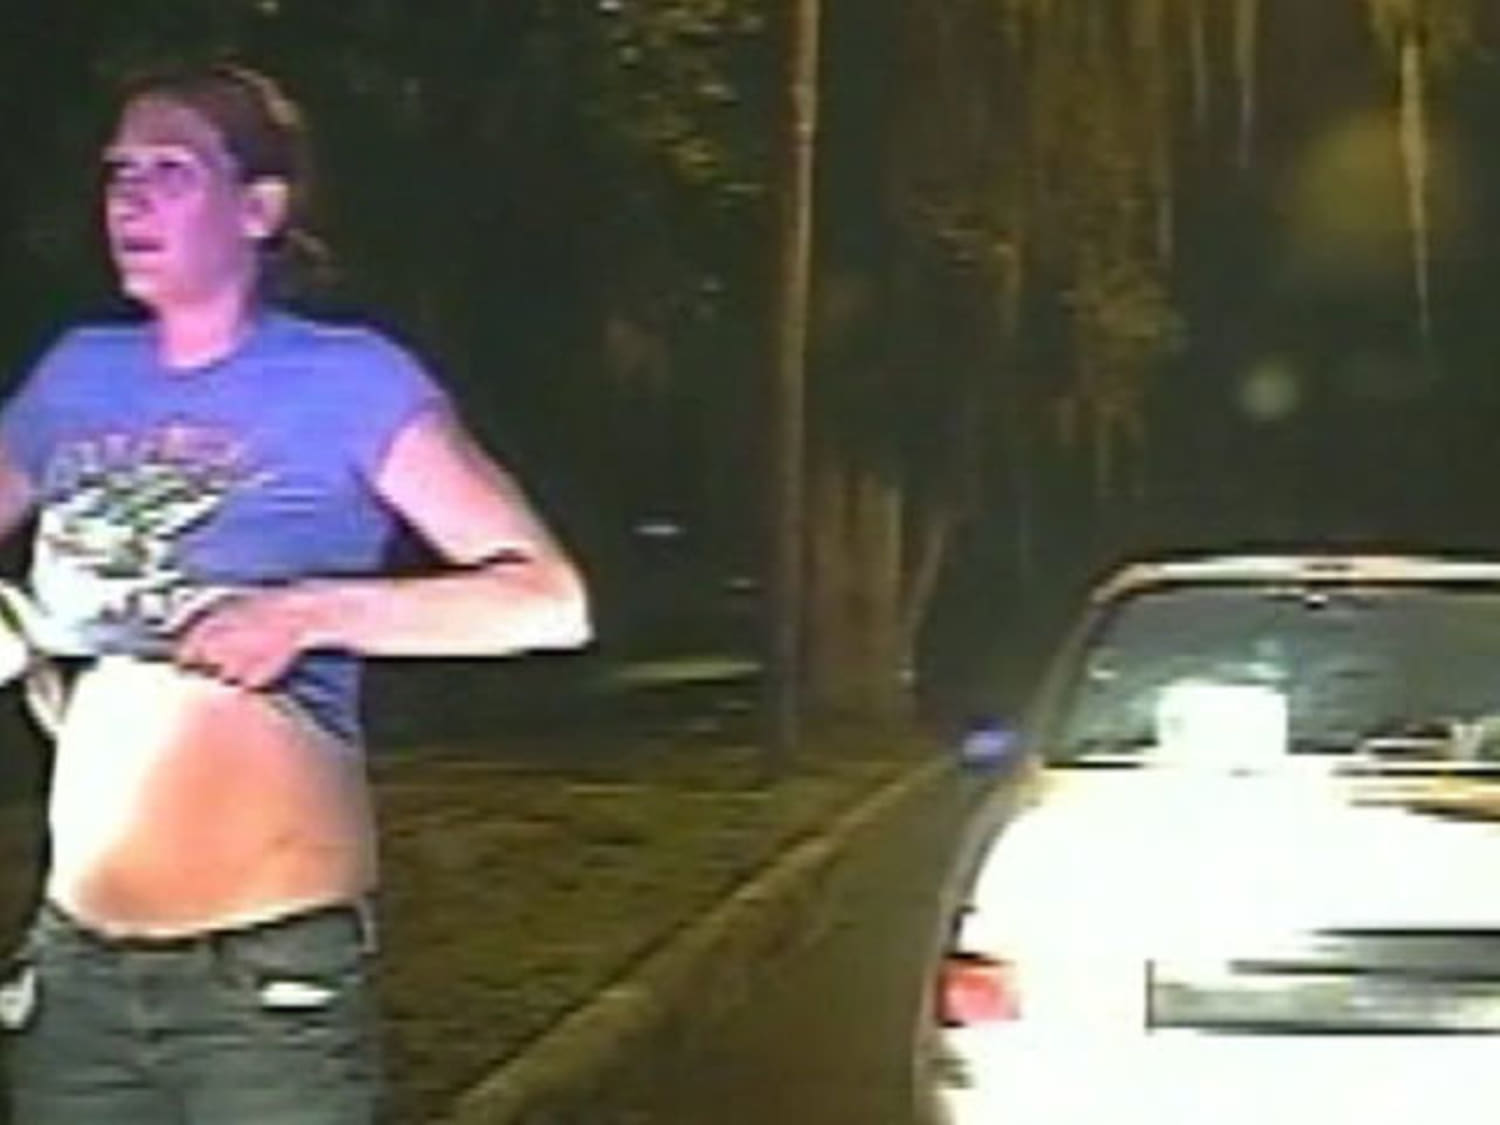 Woman asked to lift shirt, shake bra during traffic stop?